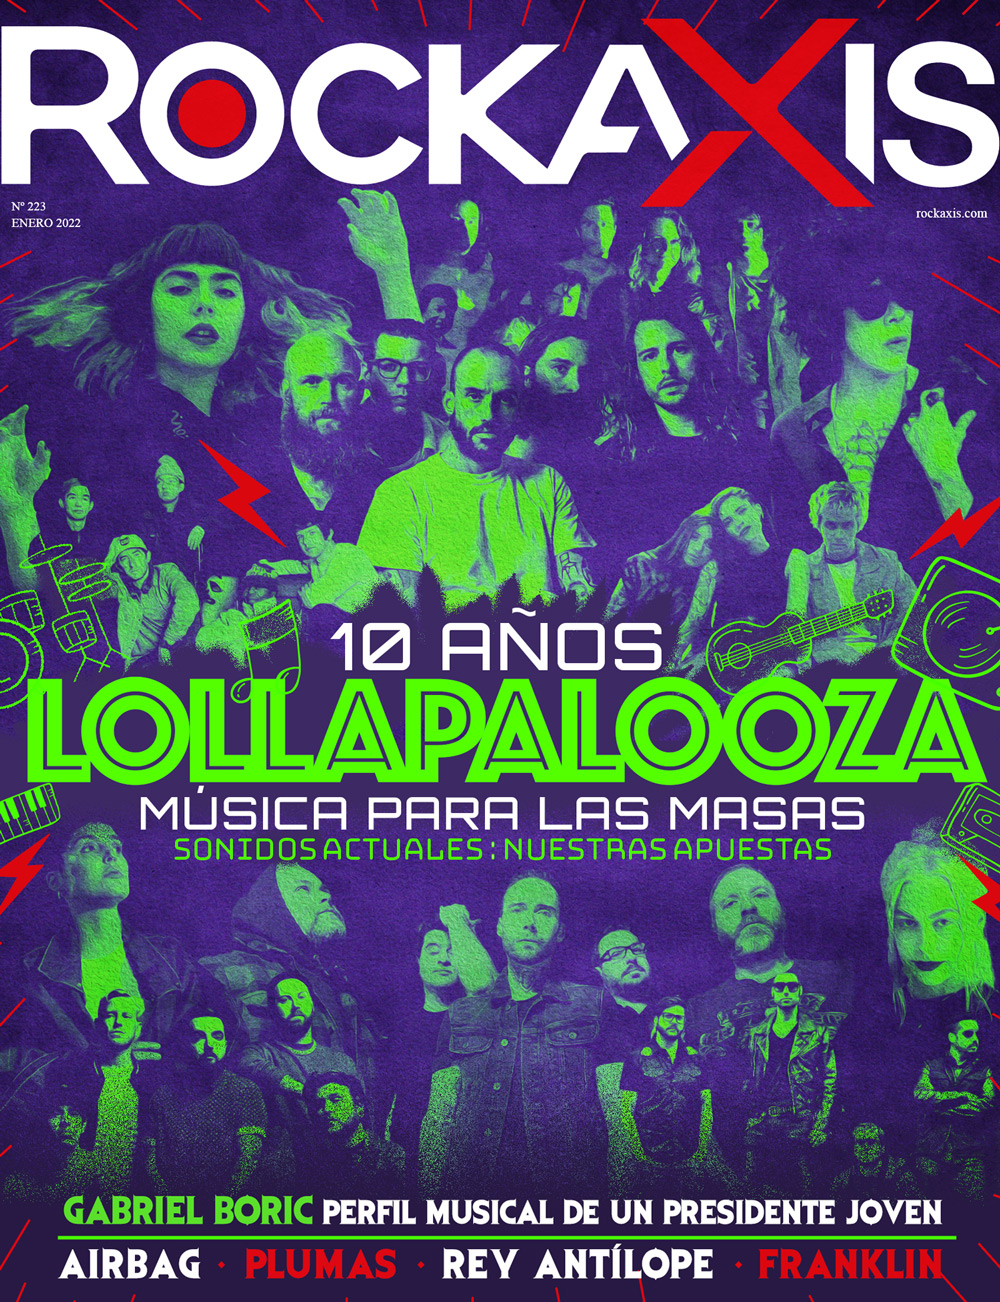 Celebramos los 10 años de Lollapalooza en revista #Rockaxis223